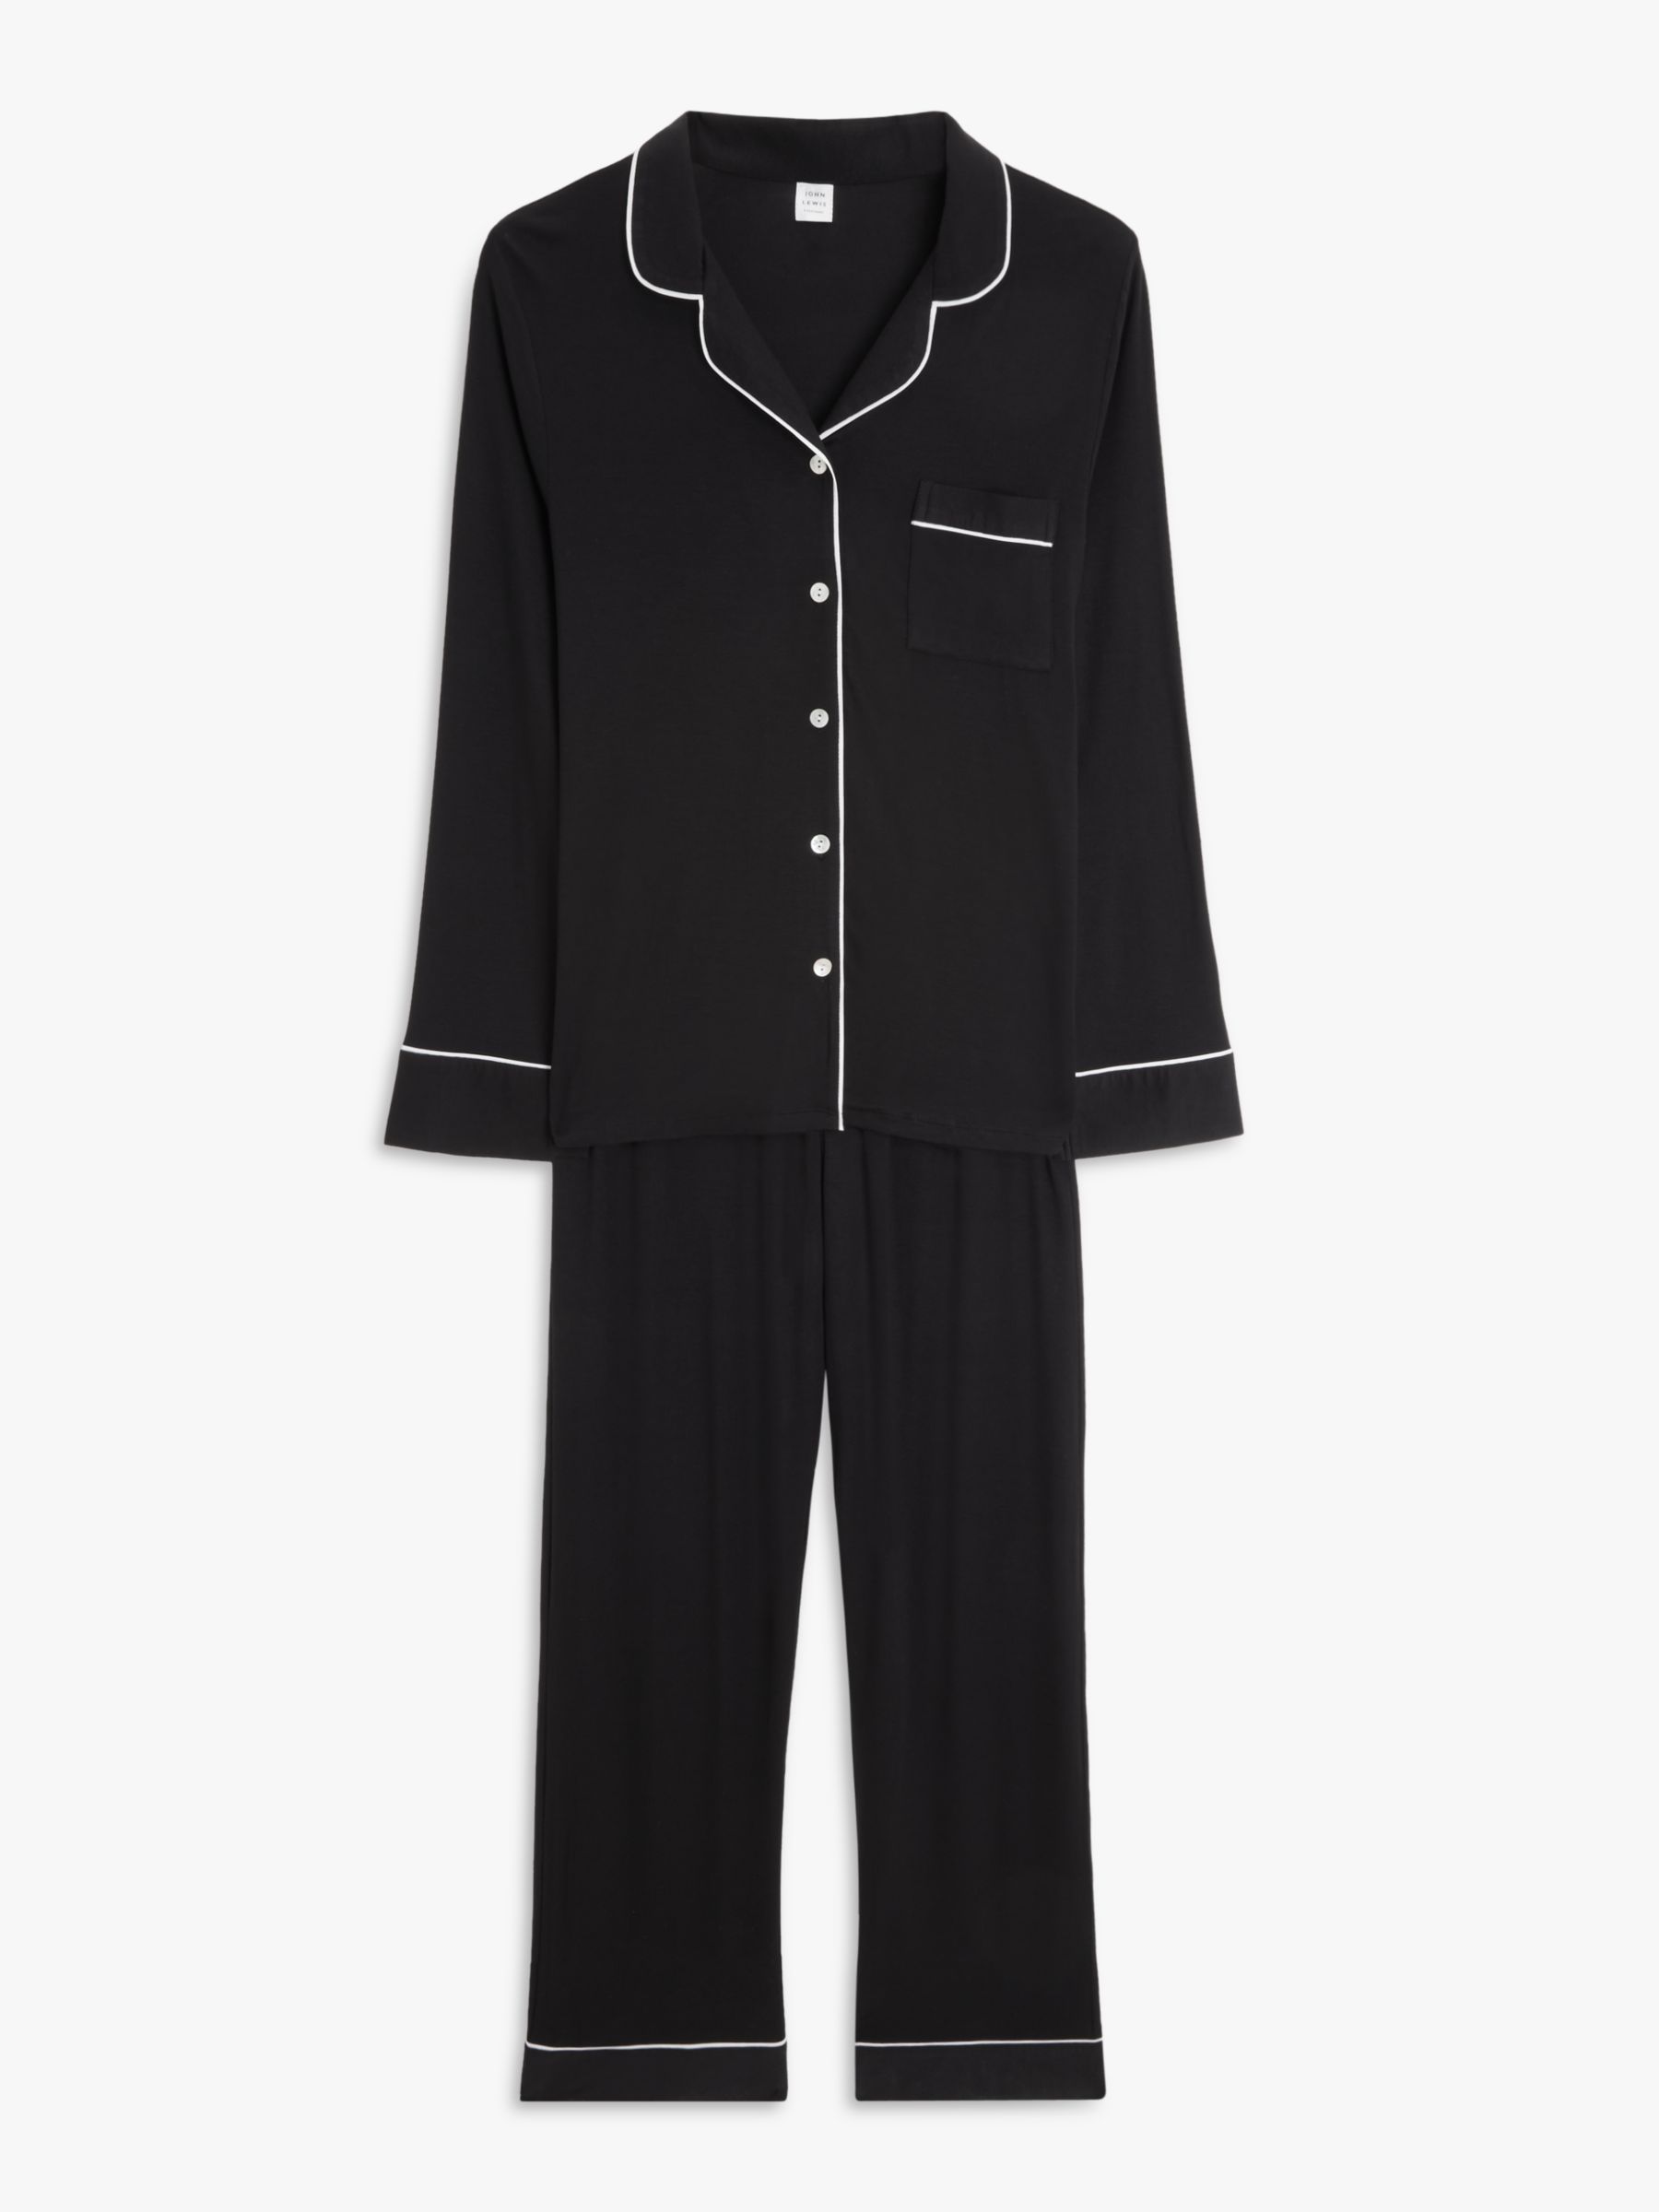 John Lewis Aria Modal Pyjama Set, Black at John Lewis & Partners